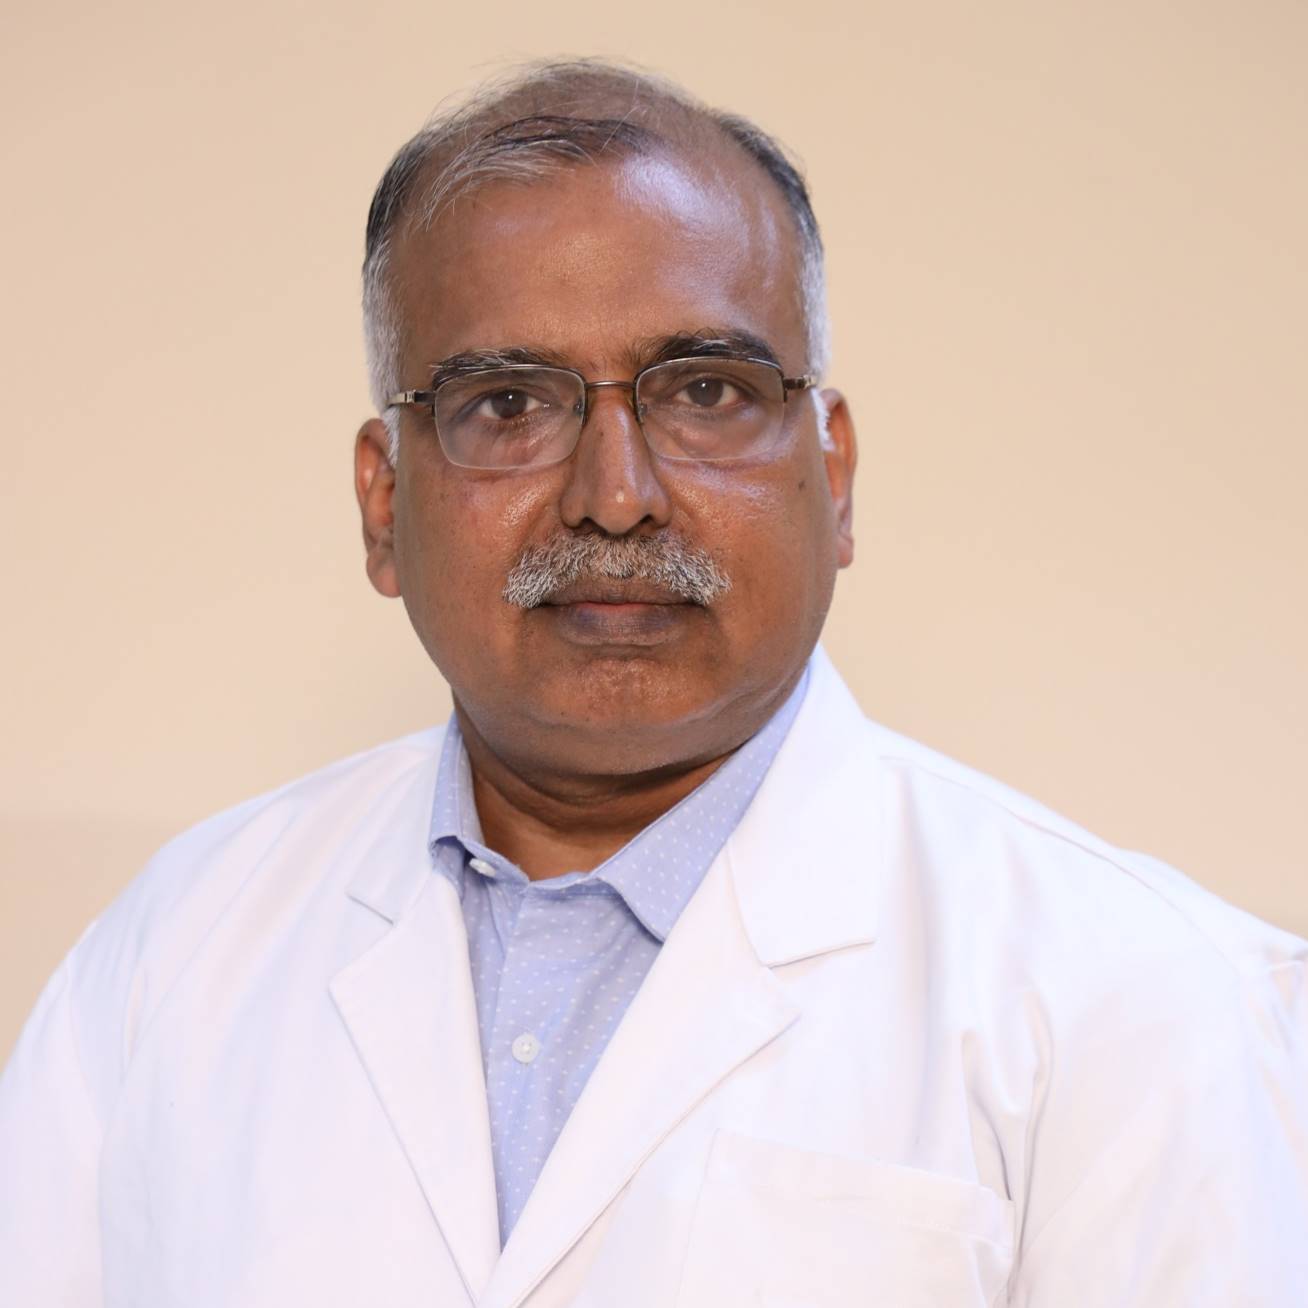 Anupam Jindal博士